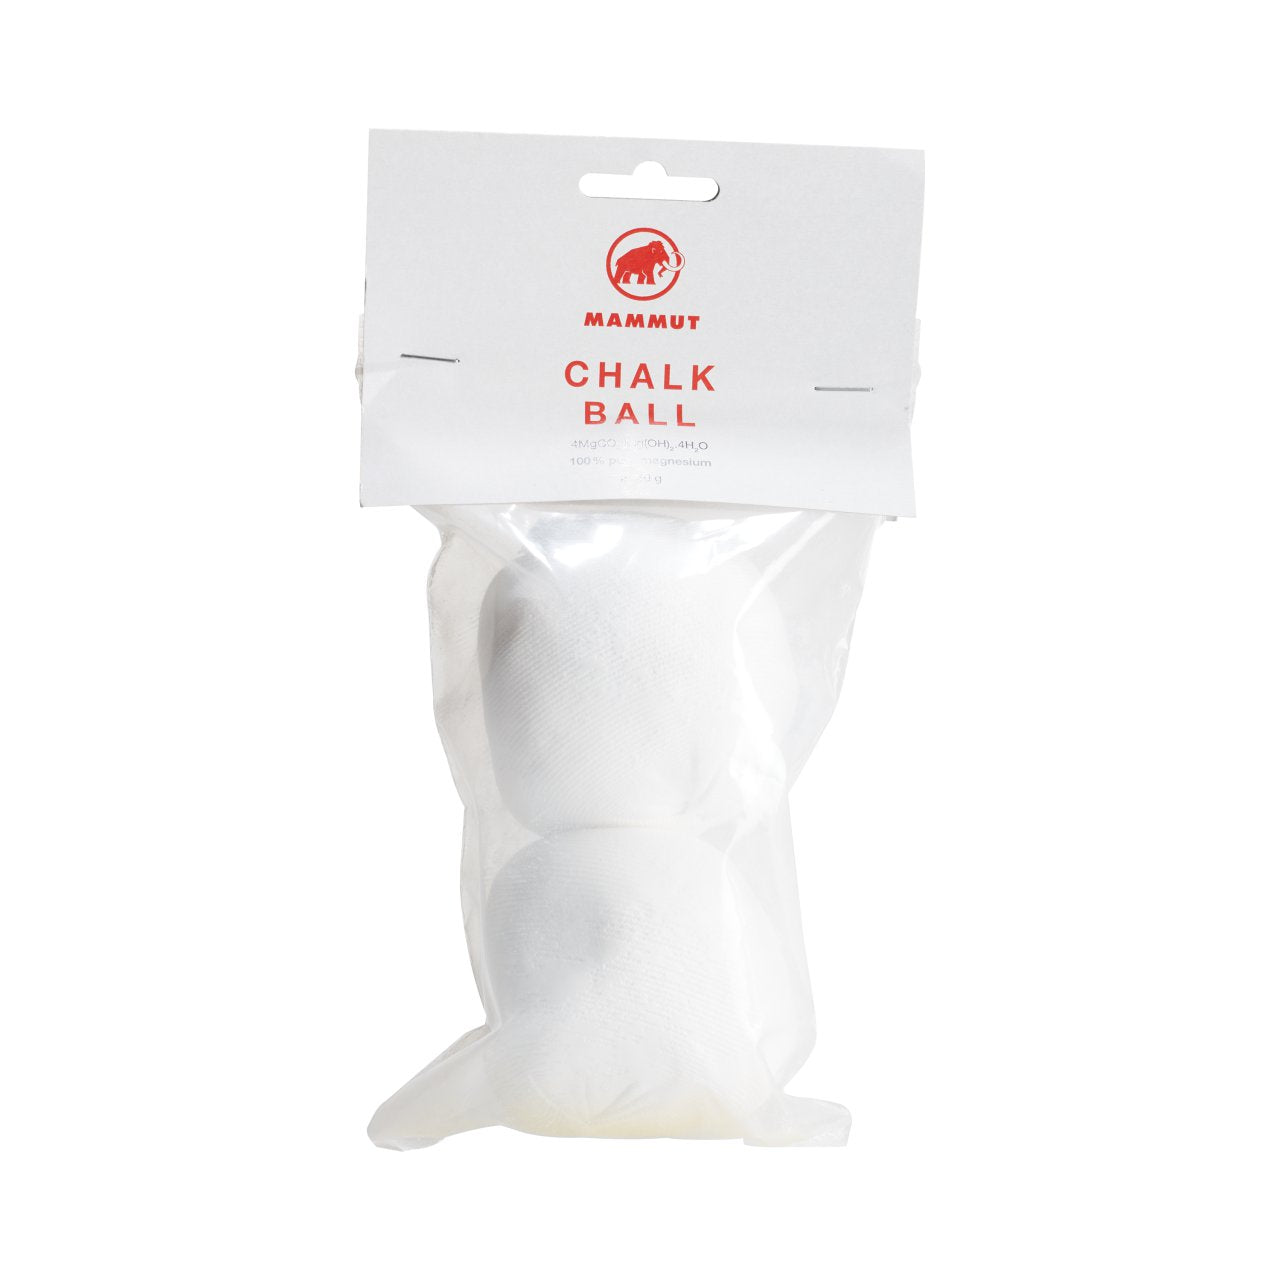 Chalk Ball (40g) - 2 pack